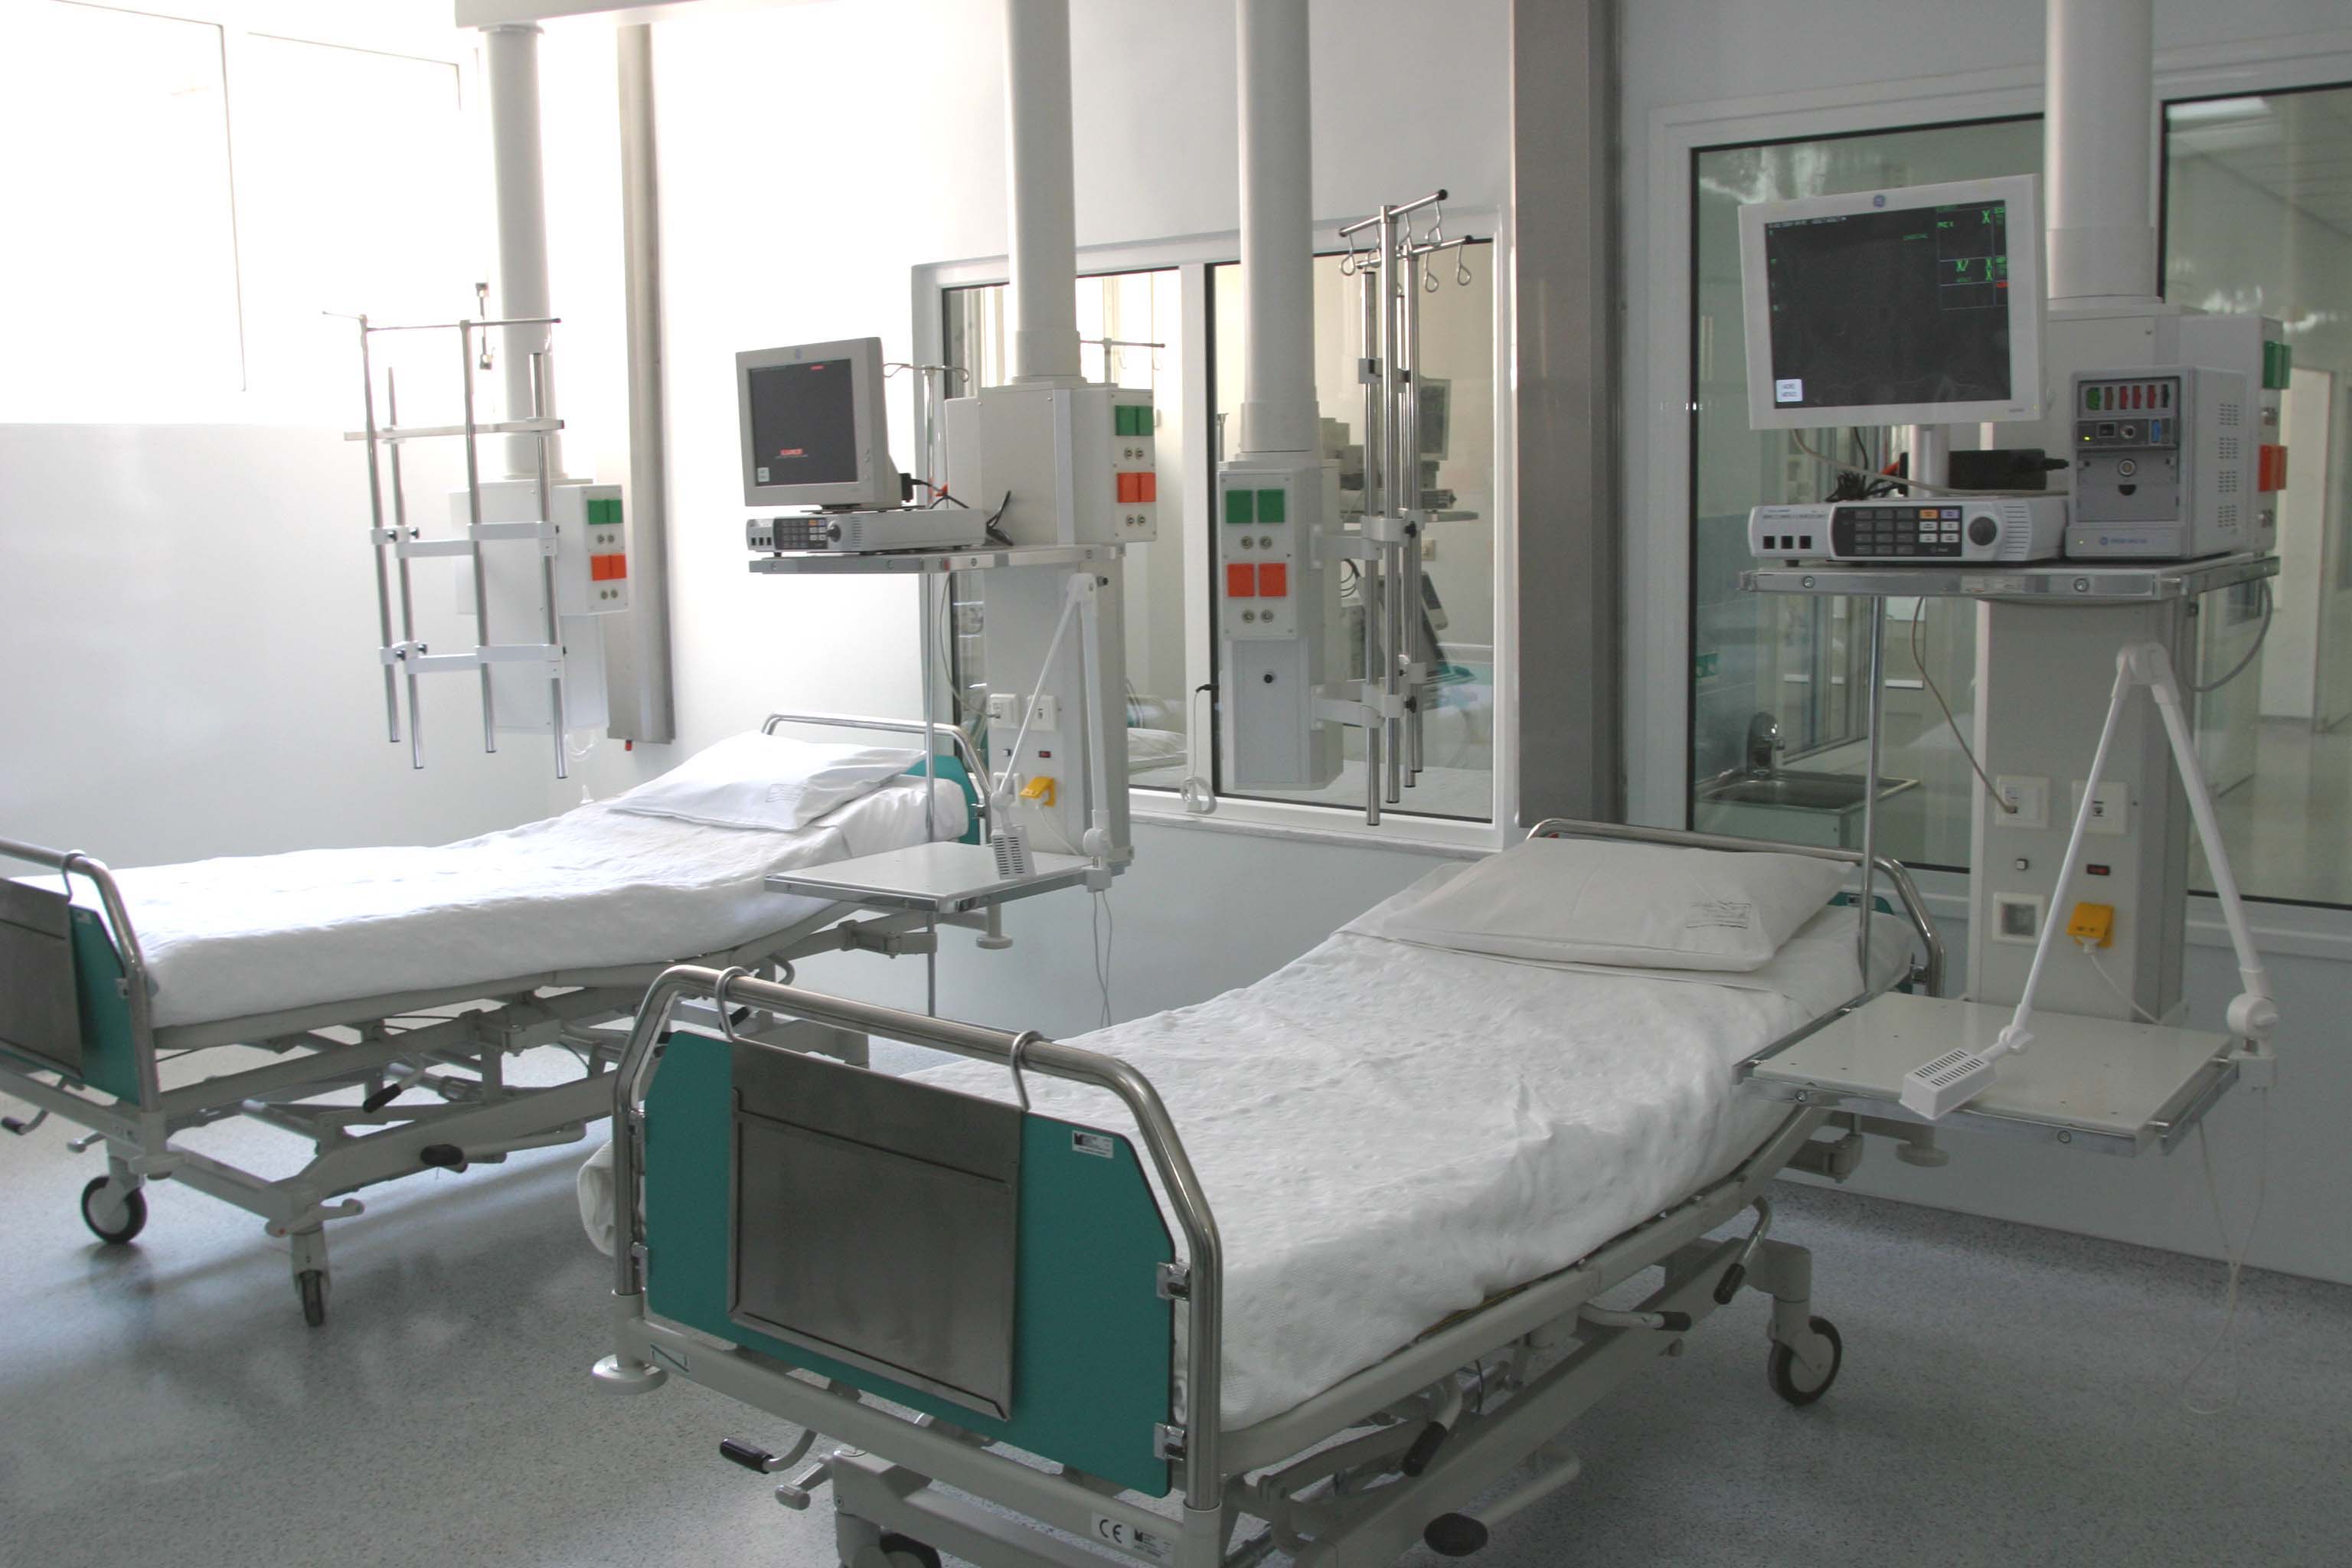 ΠΟΕΔΗΝ: Τραγικές οι ελλείψεις σε κλίνες ΜΕΘ στα δημόσια νοσοκομεία